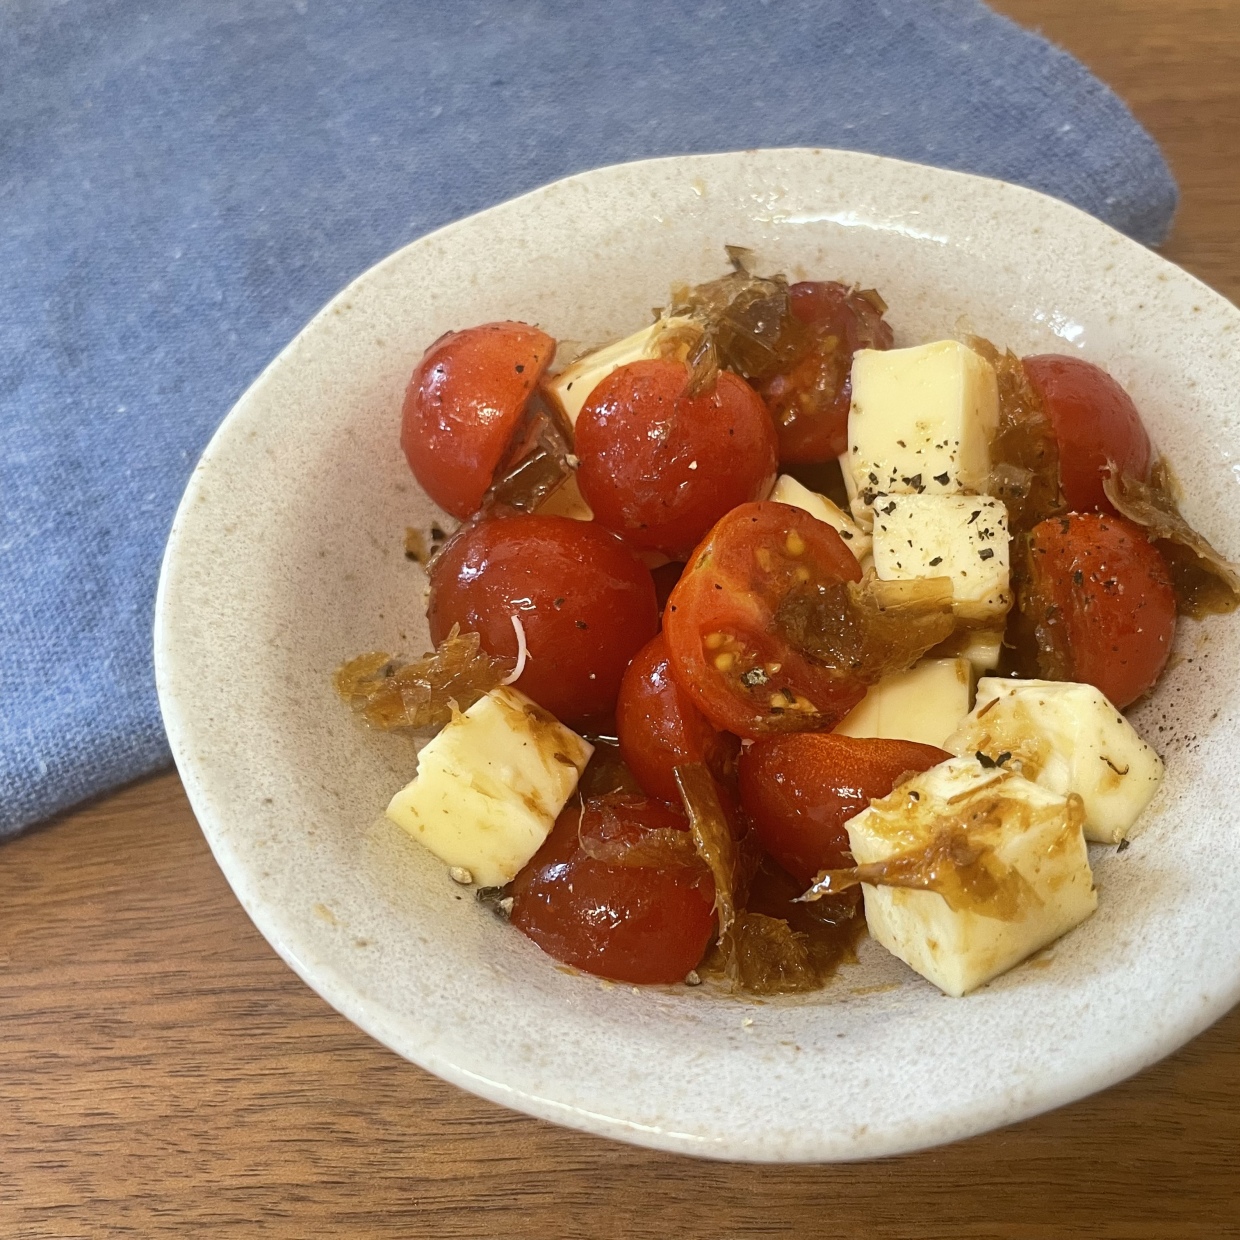  “ミニトマト・チーズ・かつお節”と調味料をまぜるだけ！ミニトマトが主役のレシピ 